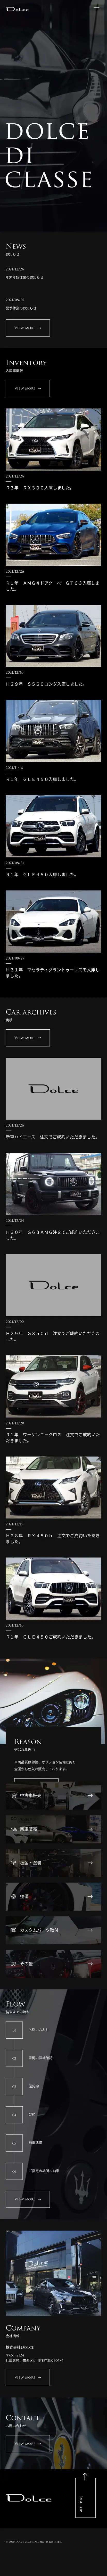 キャプチャ画面 会社名:株式会社DoLceプロジェクト名:DoLce 画面名:A デバイス名:SPカテゴリ:自動車・タイヤタグ:A,SP